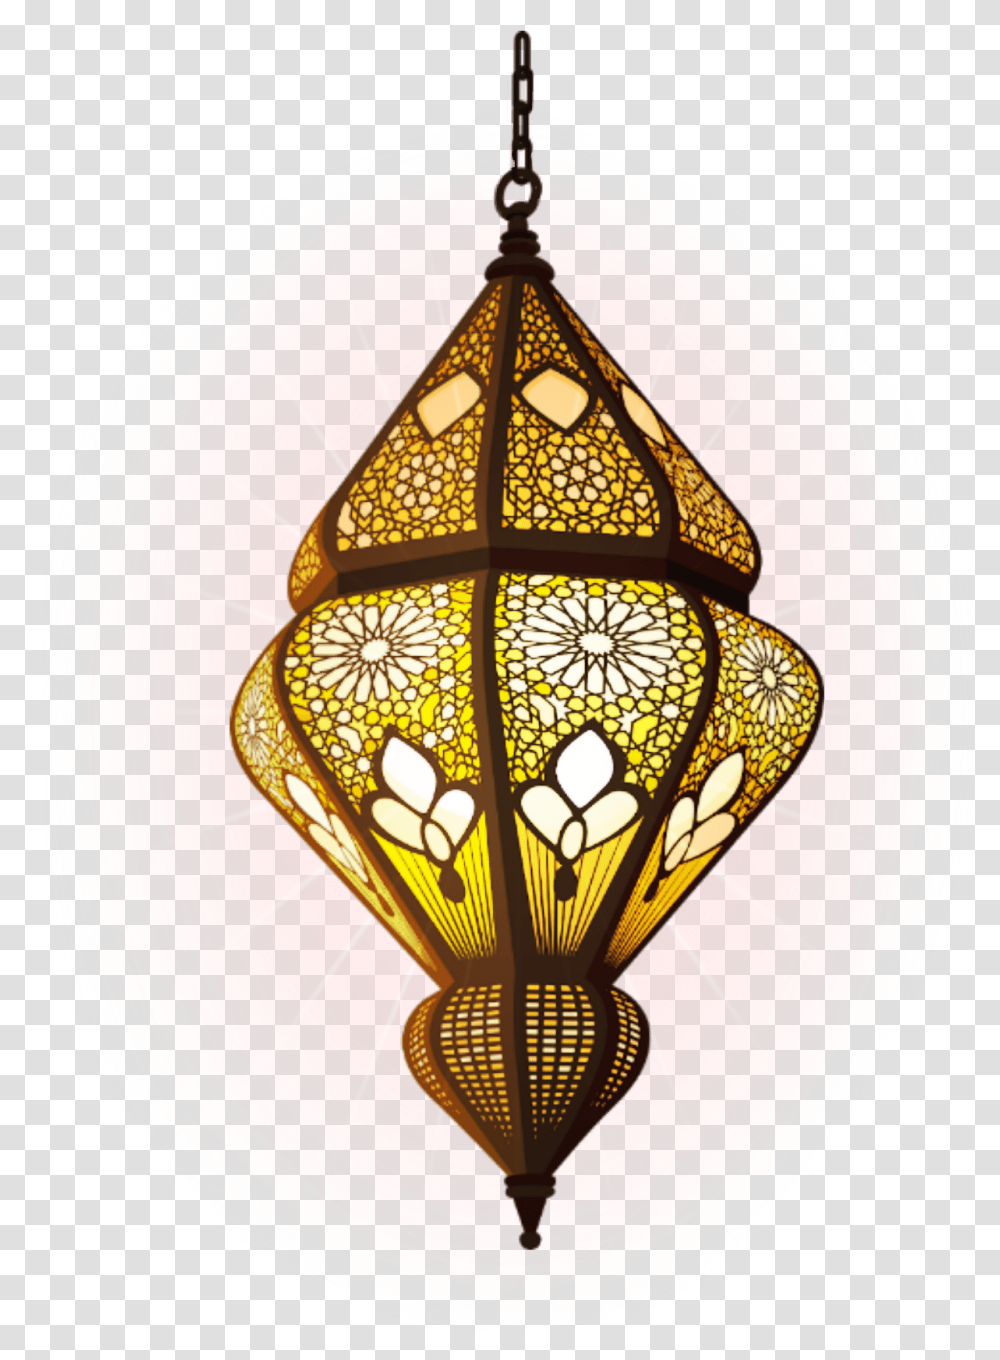 Lantern Light Lamp Hanging Suspension Boho Indian Islamic Lamp, Lampshade Transparent Png